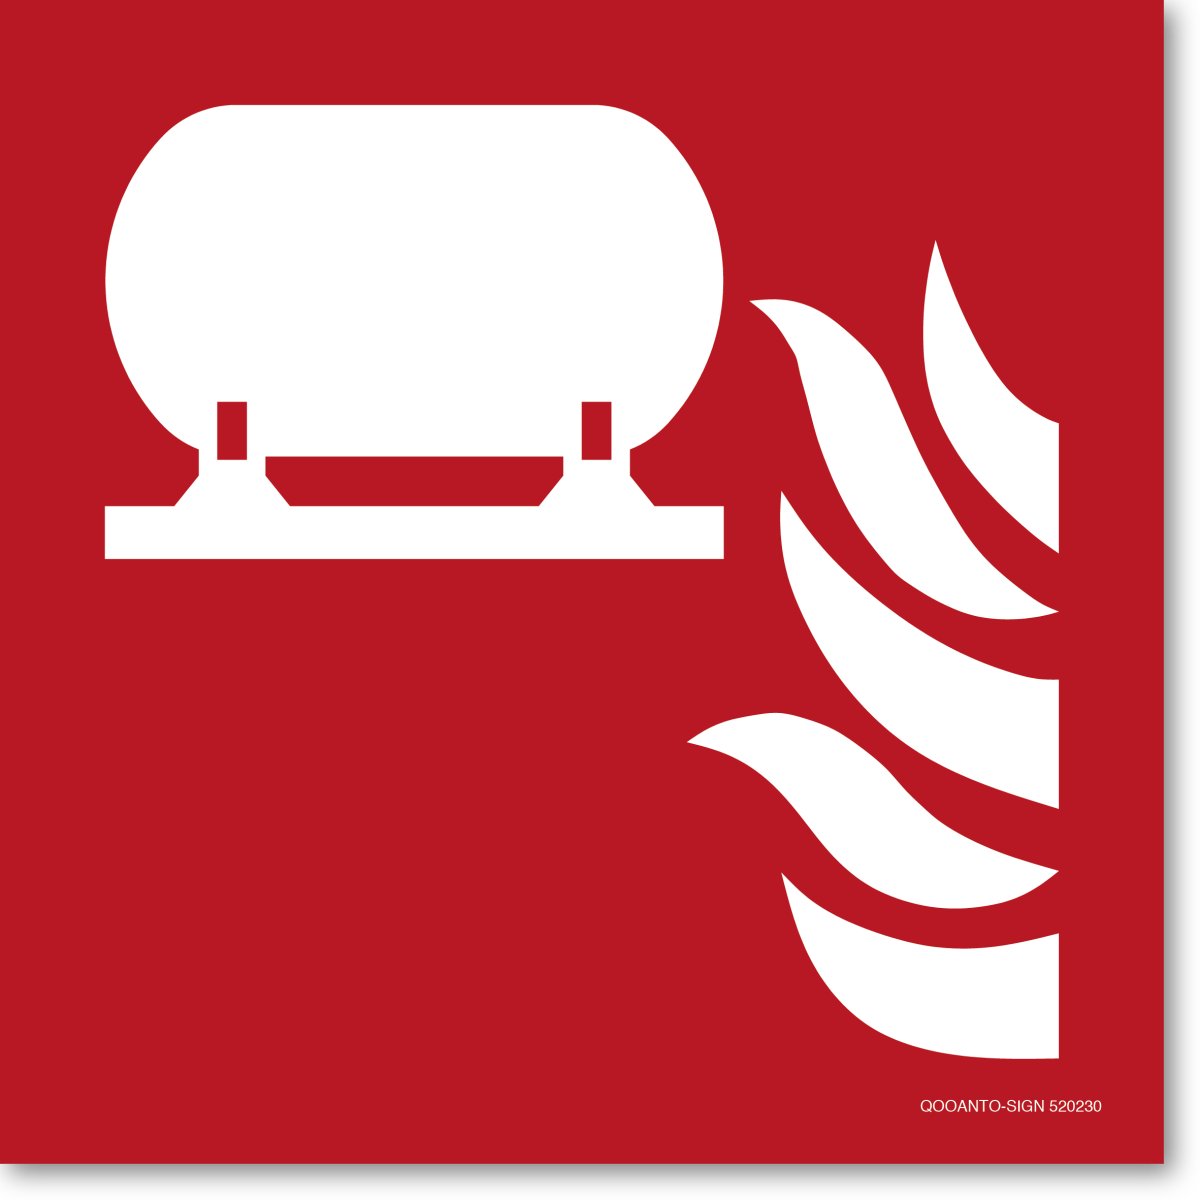 Fest Eingebaute Feuerlösch-Einrichtung, EN ISO 7010, F012 Brandschutzschild oder Aufkleber aus Alu-Verbund oder Selbstklebefolie mit UV-Schutz - QOOANTO-SIGN